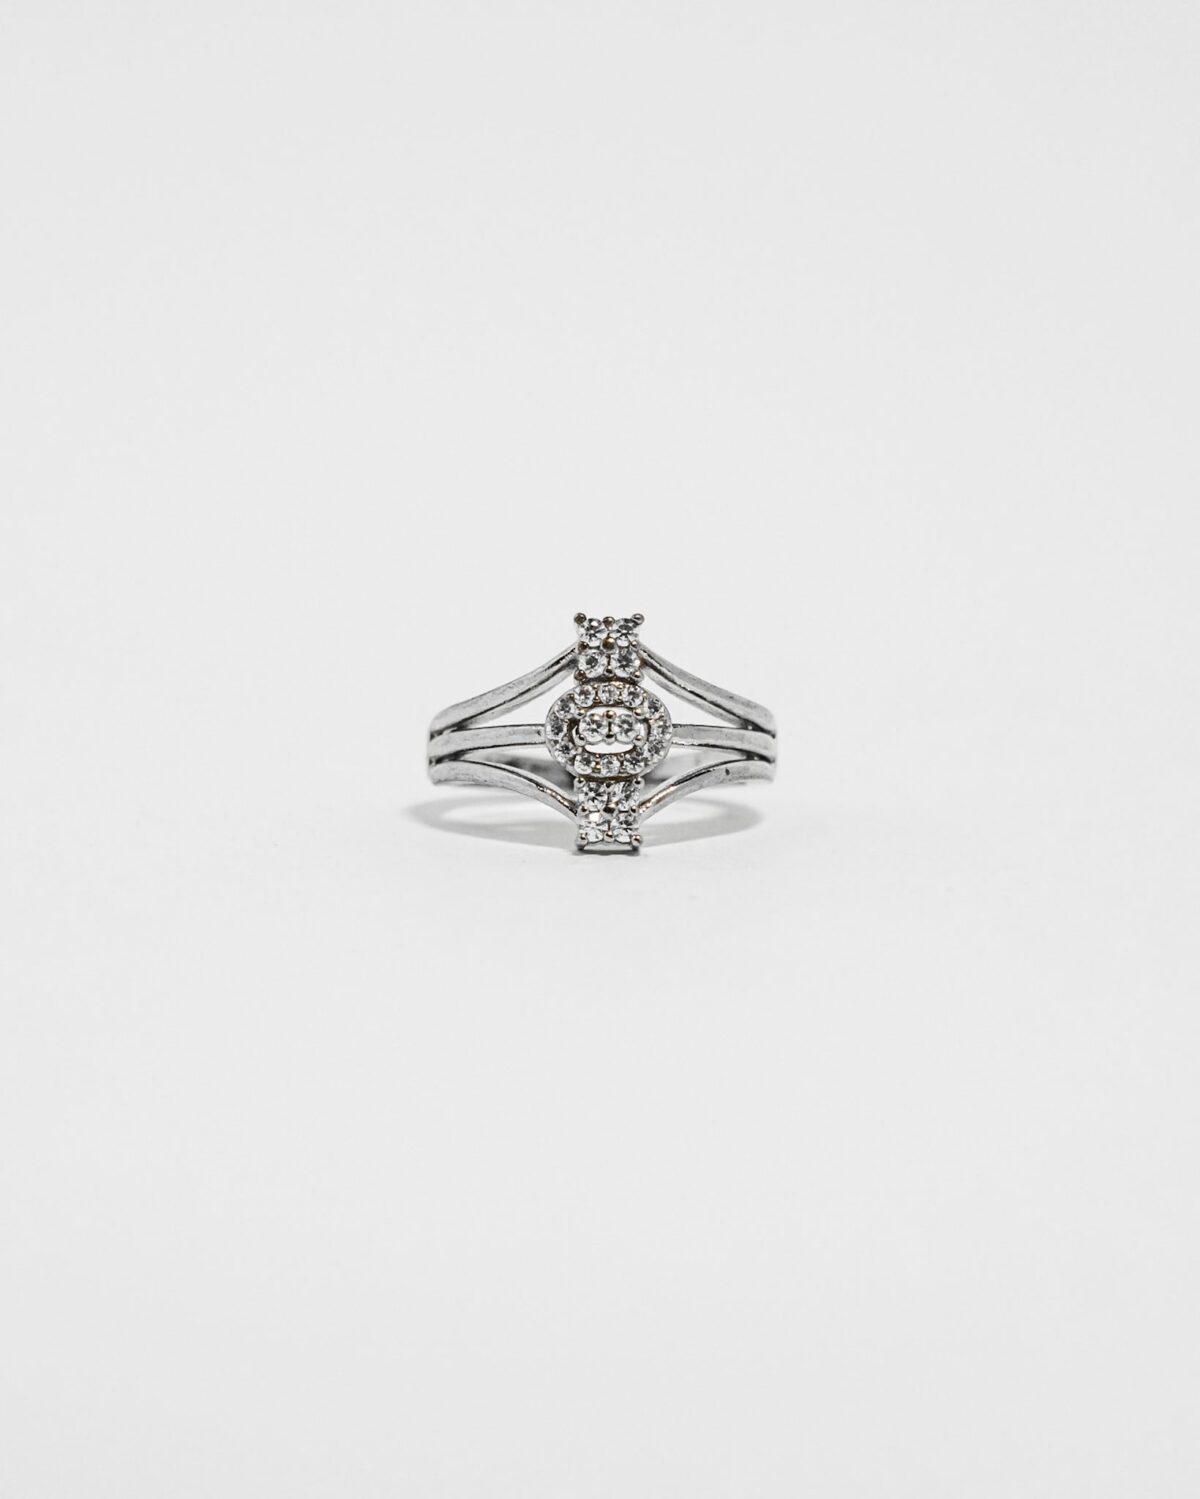 luxeton silver ring-DSC04631